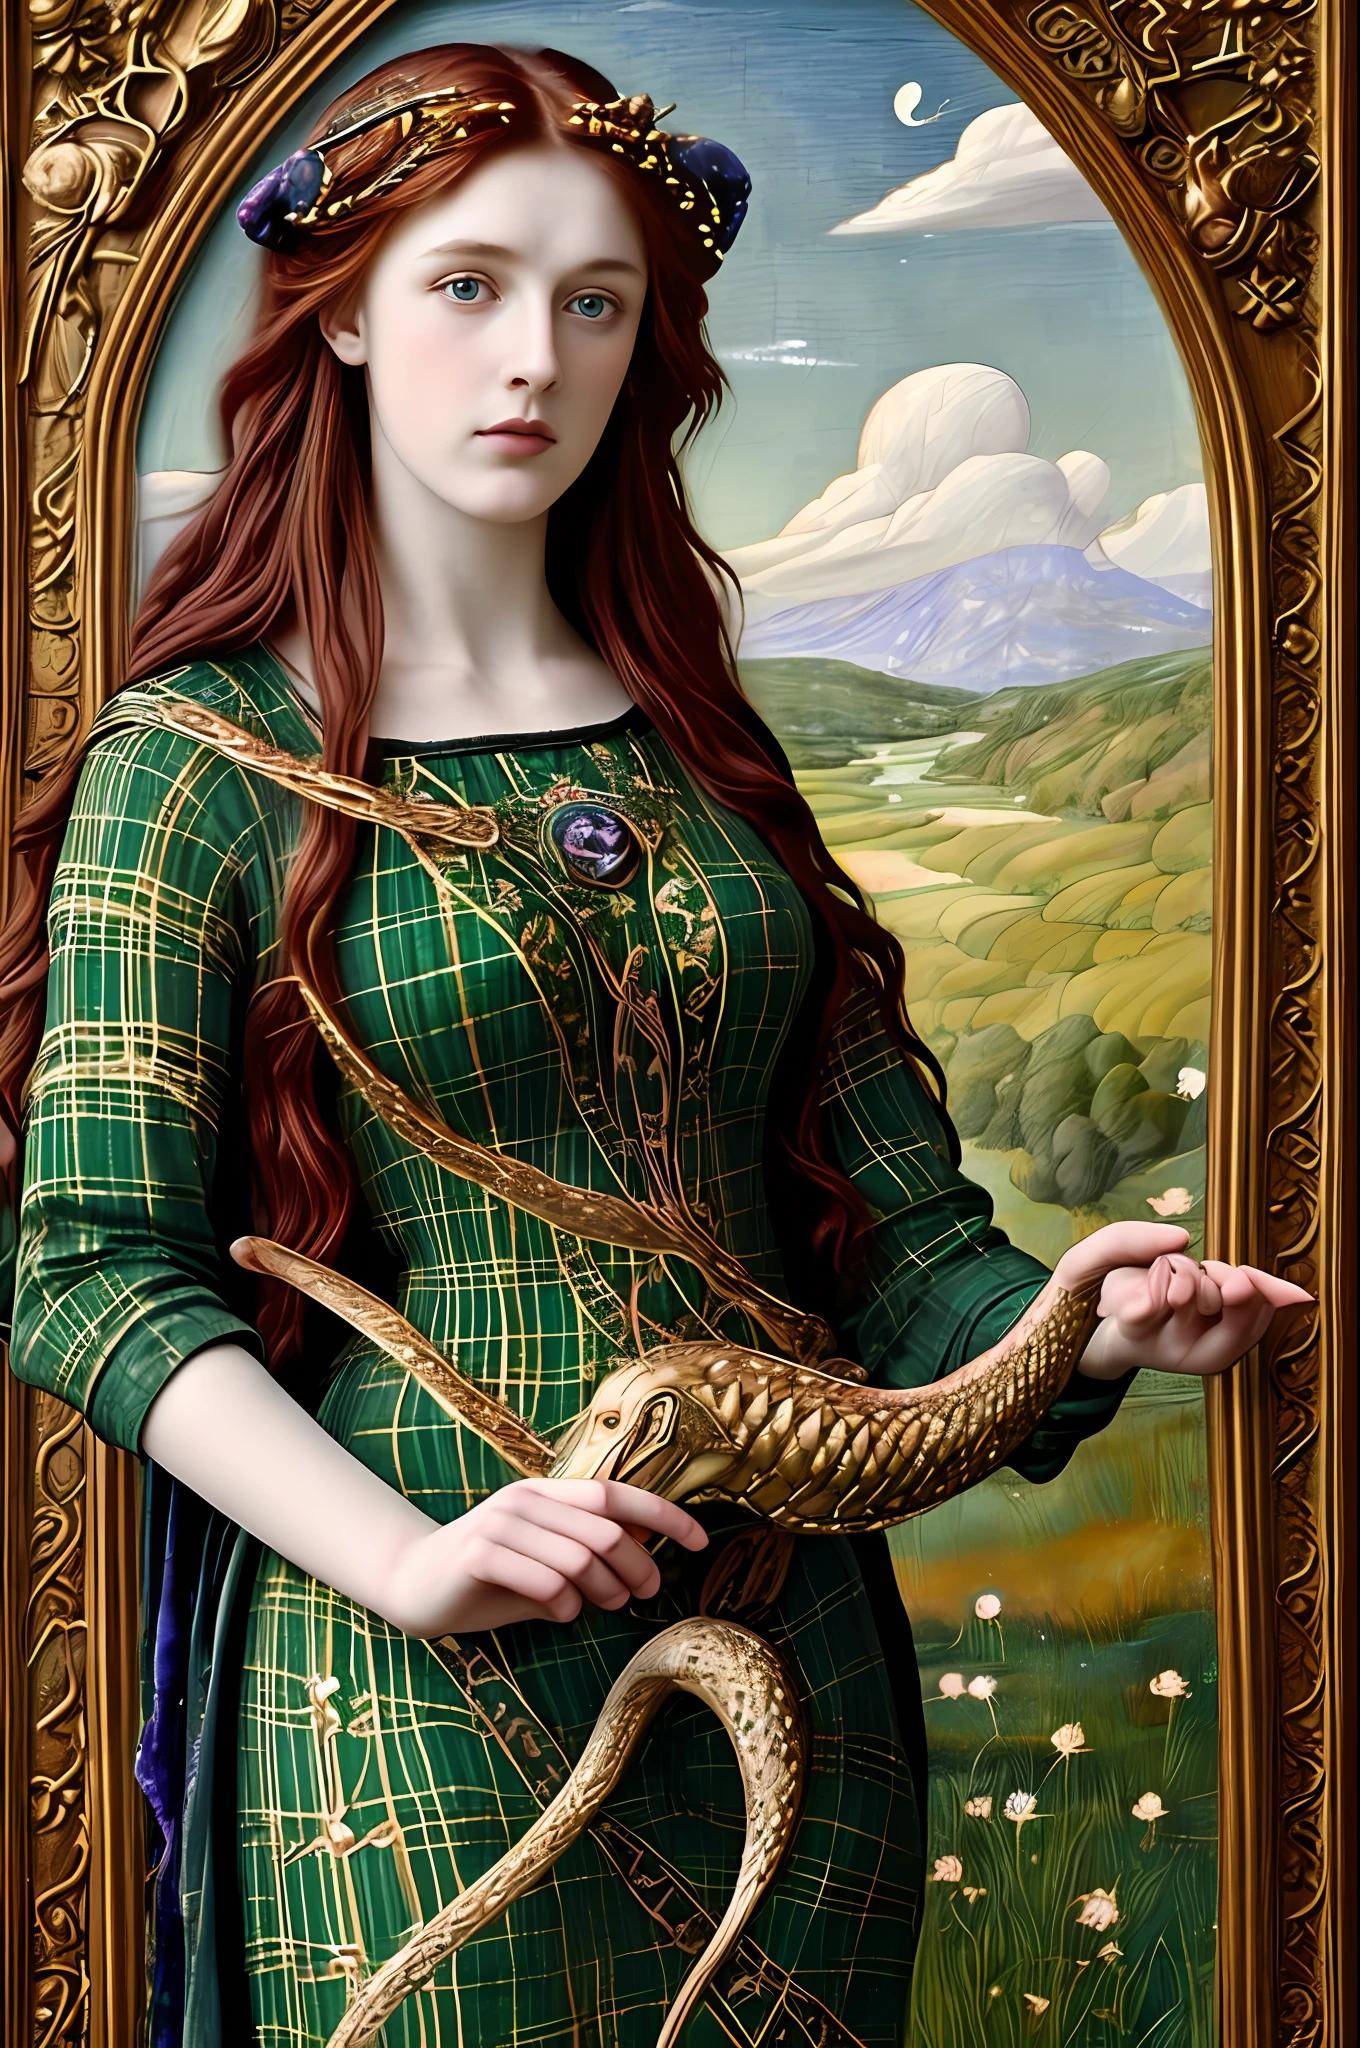 (((Живопись прерафаэлитов))) Кельтская богиня исцеления со звездой на макушке летит в небе, друид, белая клетчатая одежда, holds a змея, Кельтский стиль, Друидизм, стиль ренессанс, Осенние тона, змея, гадюка, змея, Уроборос